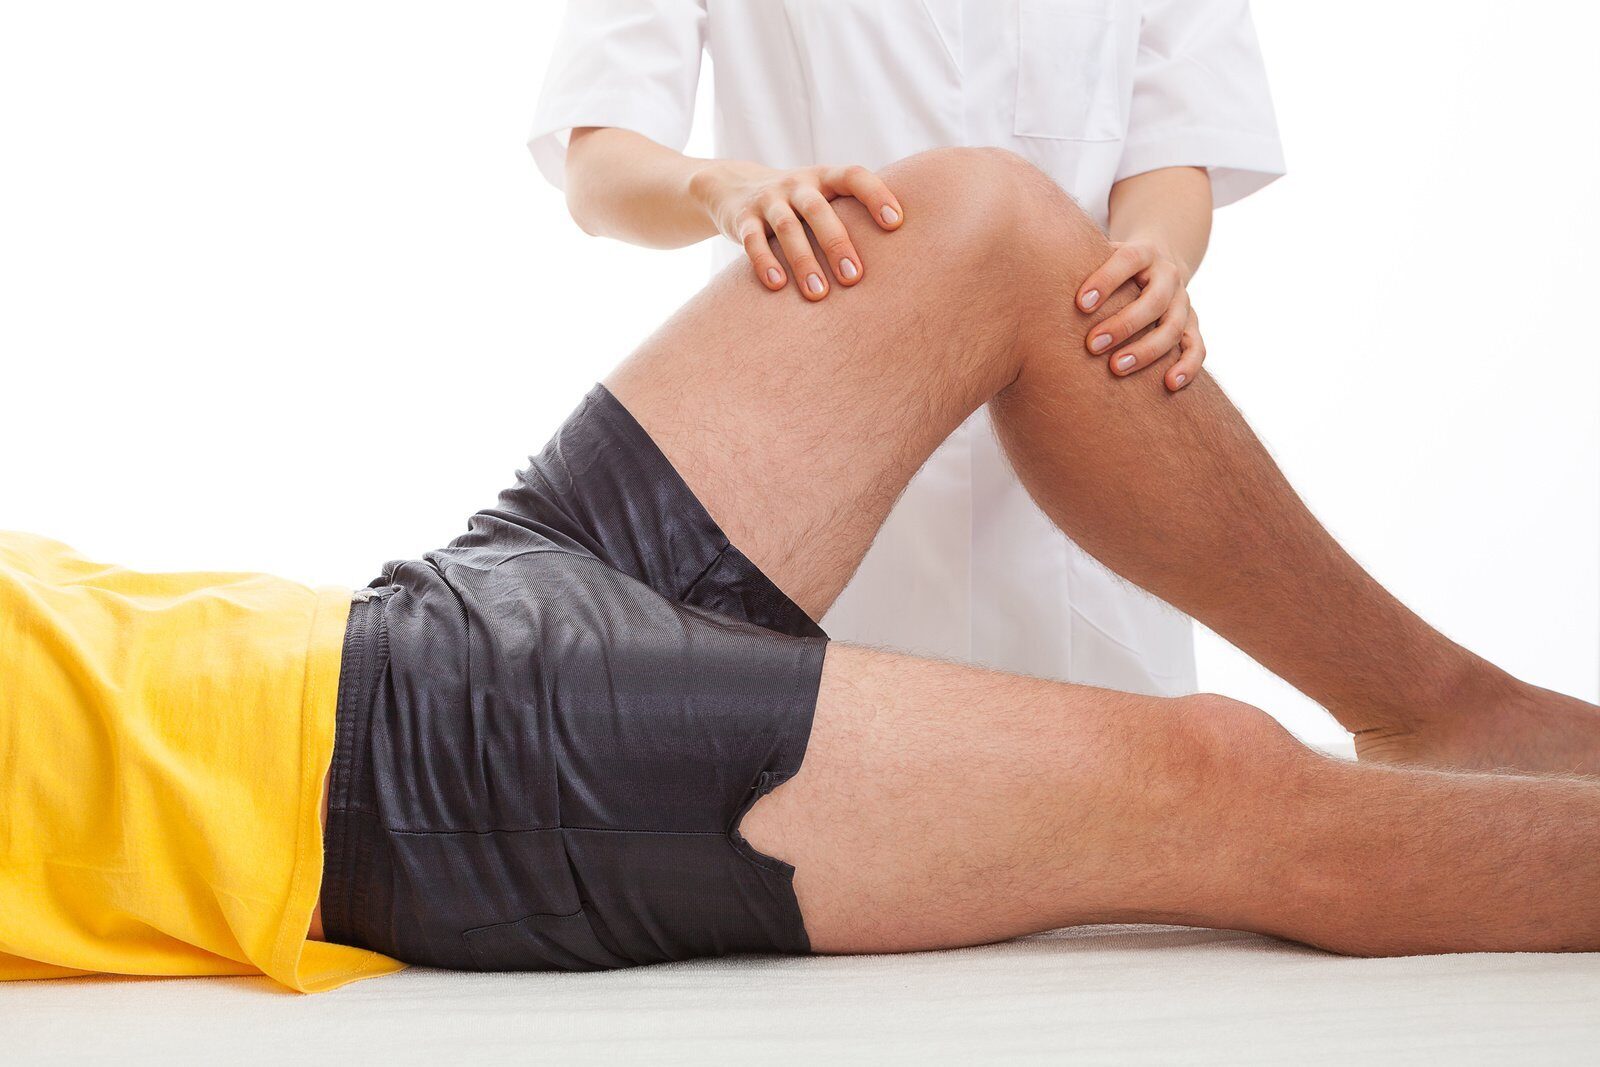 Болит колено у мужчины причины лечение